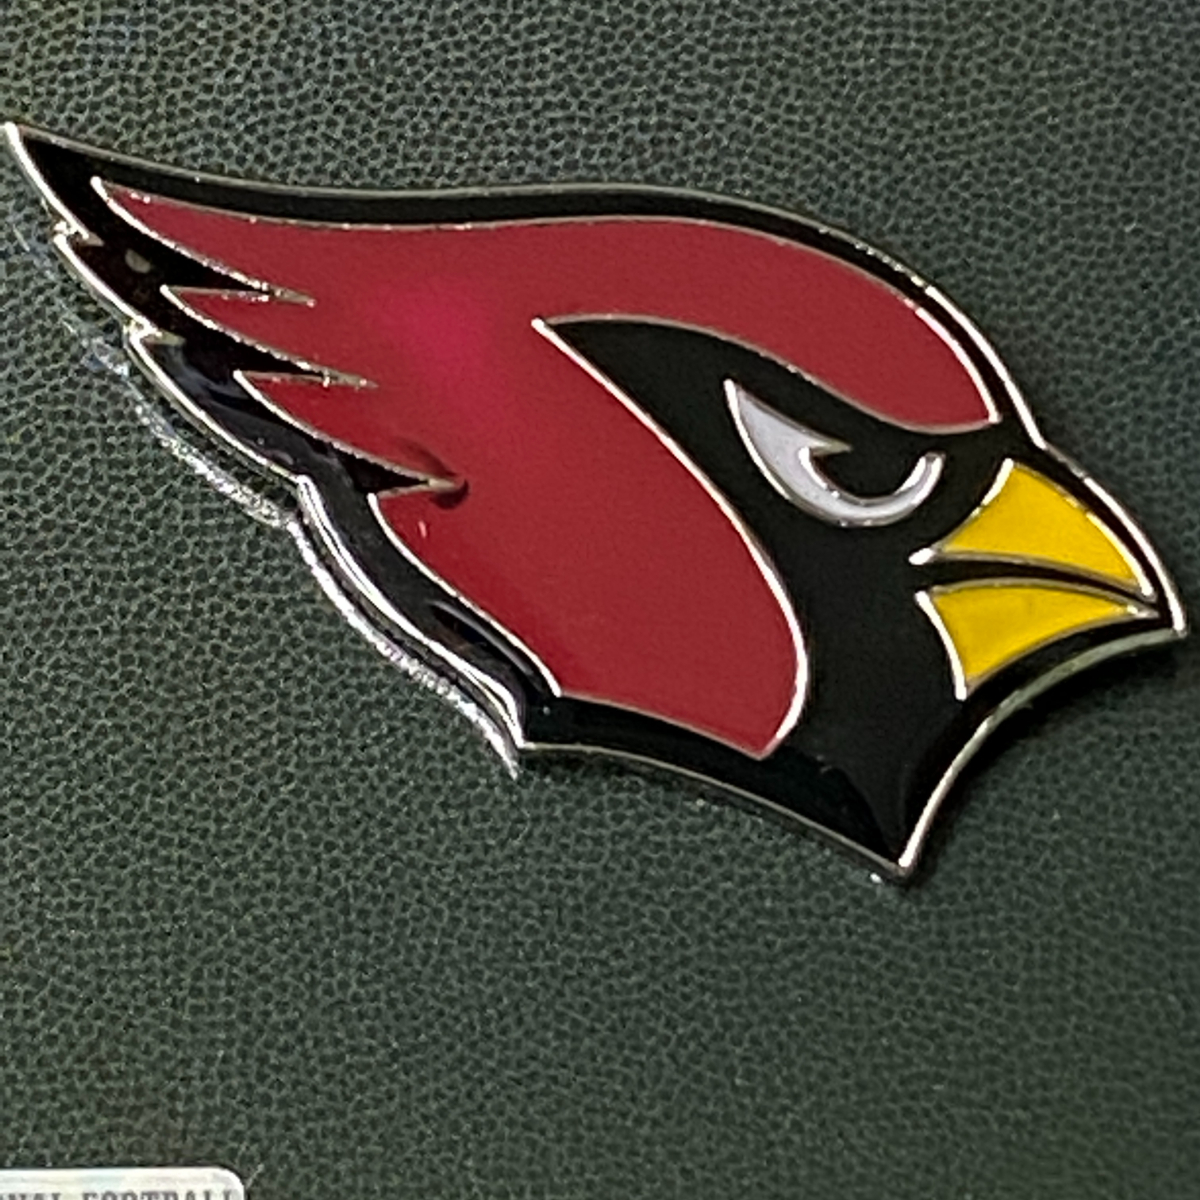 NFL 公式ライセンス製品 Amingo ピンズ Pins ピンバッチ Cardinals アリゾナ カージナルス USA正規品 アメリカンフットボール_画像2